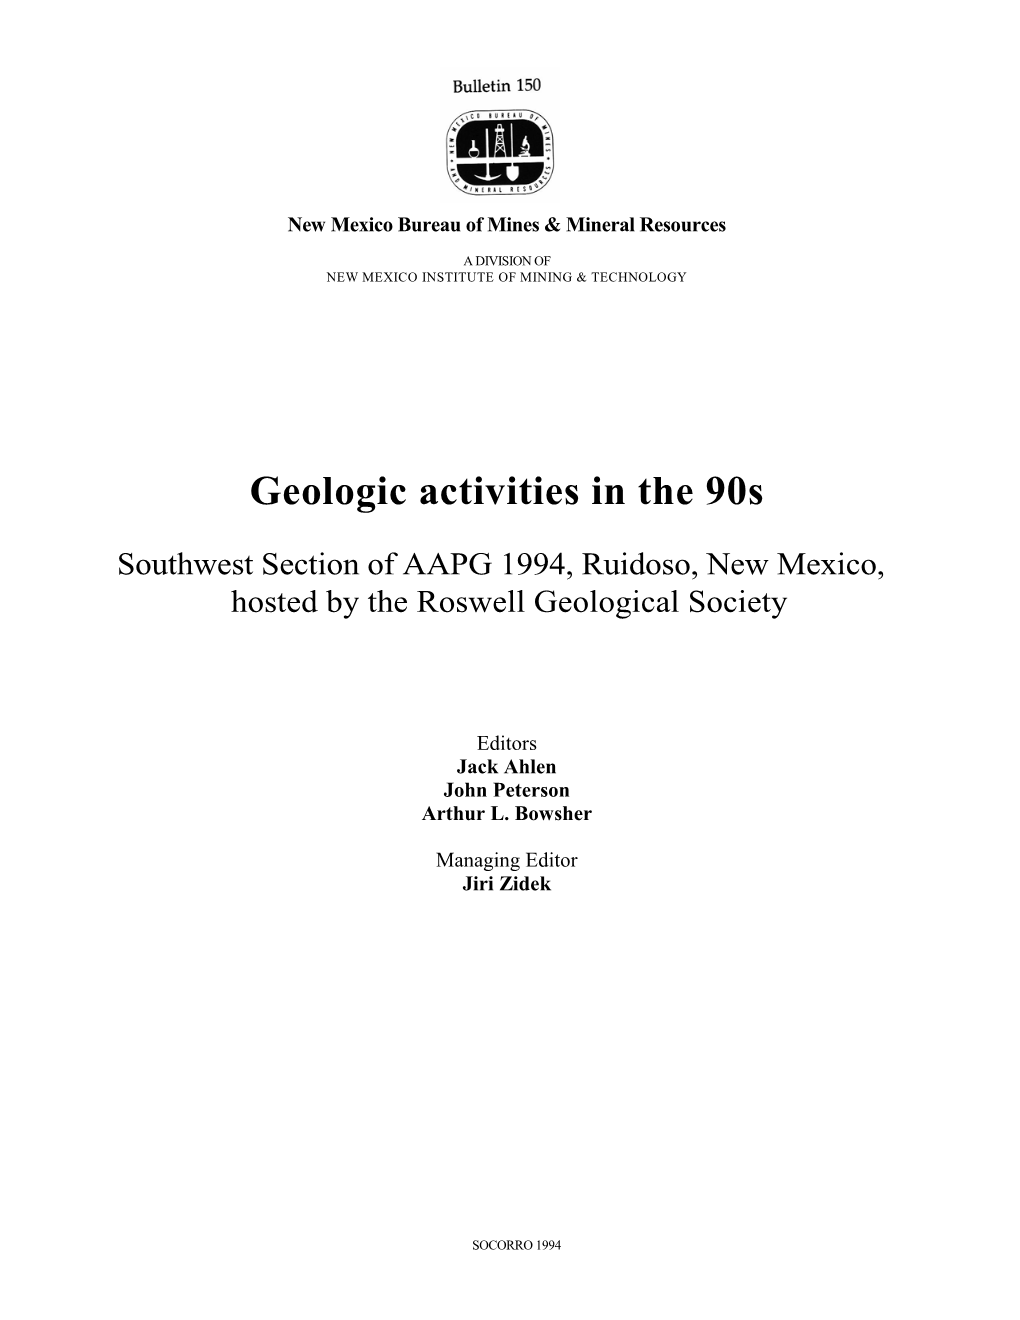 Geologic Activities in the 90S